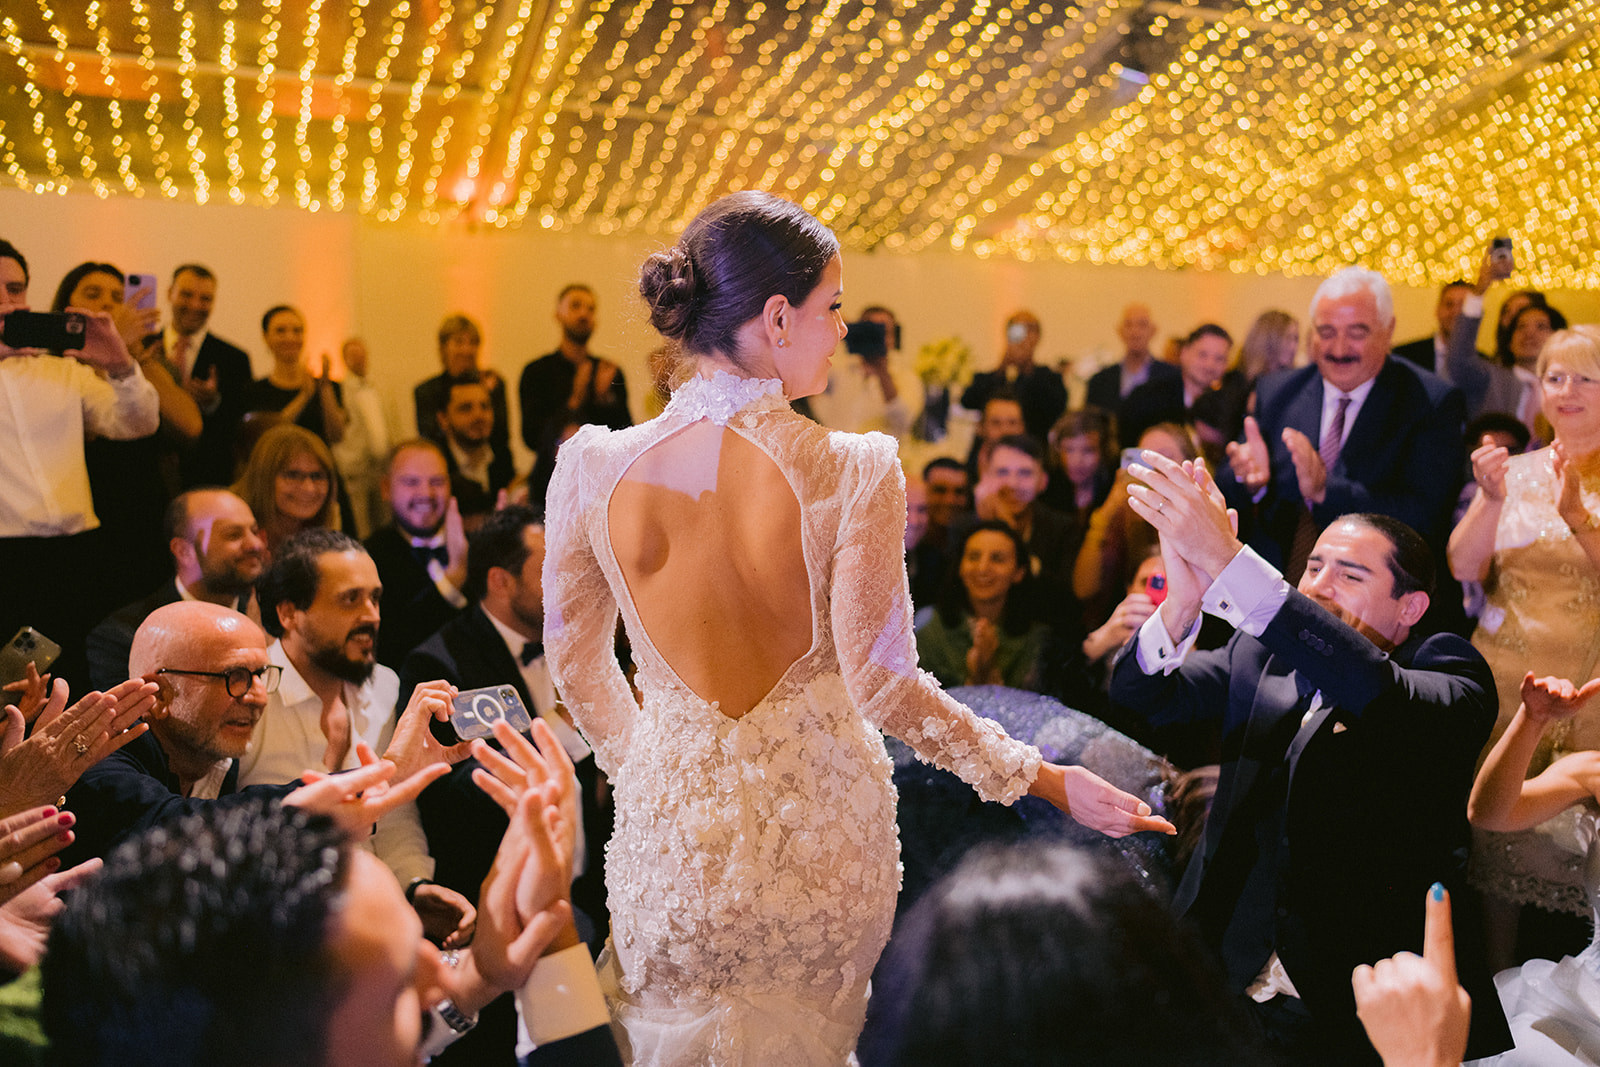 la mariée danse devant tous les invités qui l'applaudissent de joie en voyant son visage illuminé de toutes flamme sans oublier sa robe à dos nu